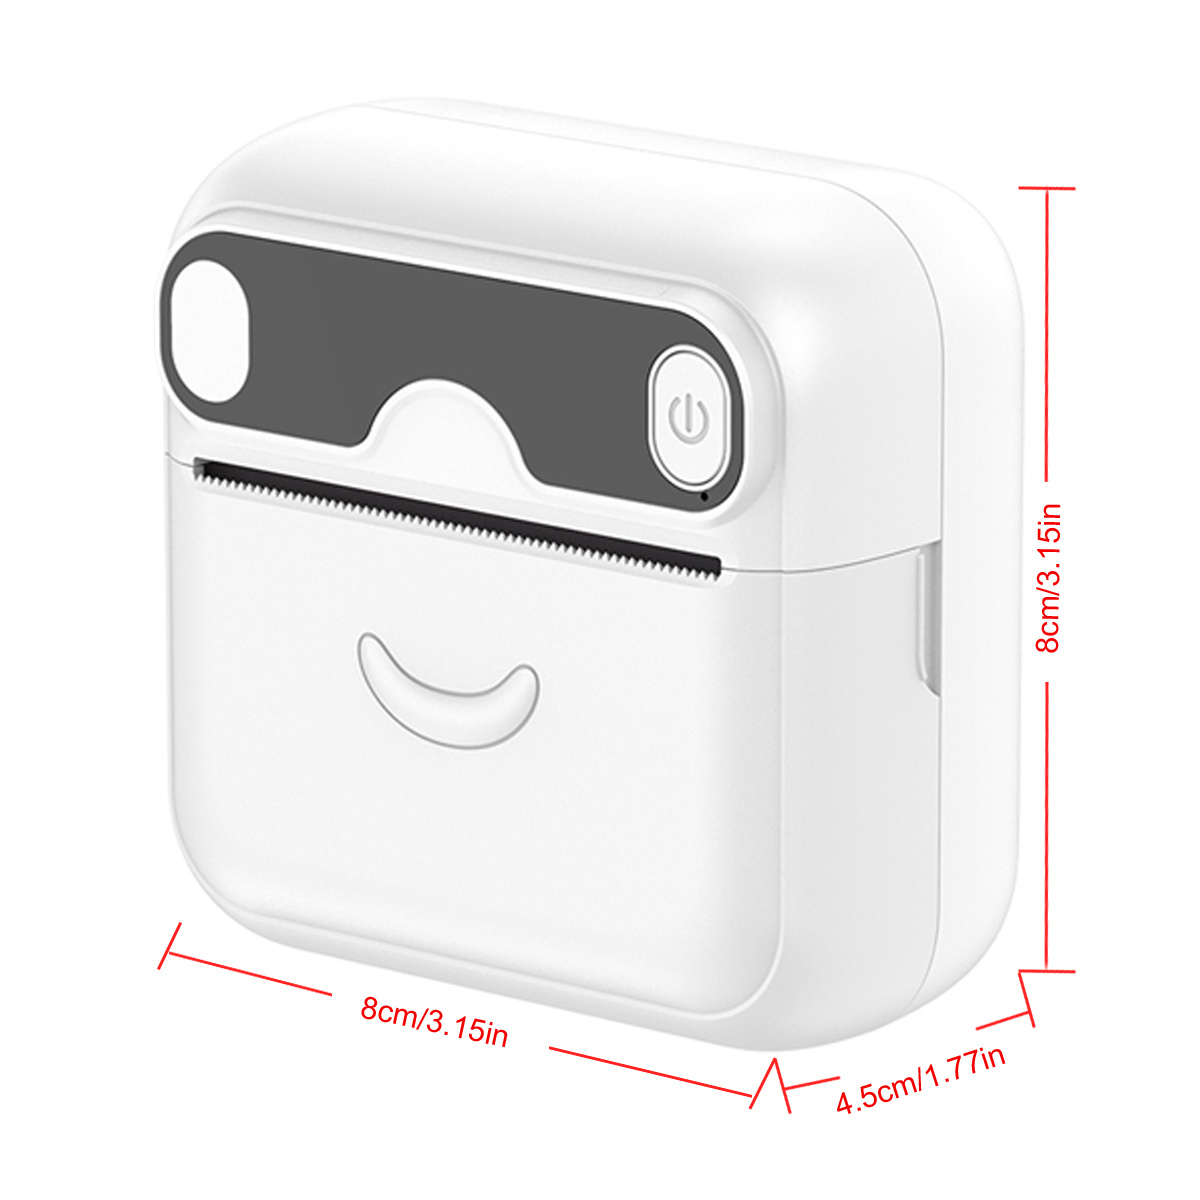  Memoqueen Mini impresora térmica M04AS Impresora portátil de  adhesivos impresora inalámbrica Bluetooth para iPhone, compatible con papel  de 15/53/80/4.331 in, compatible con iOS y Android, ideal para : Productos  de Oficina